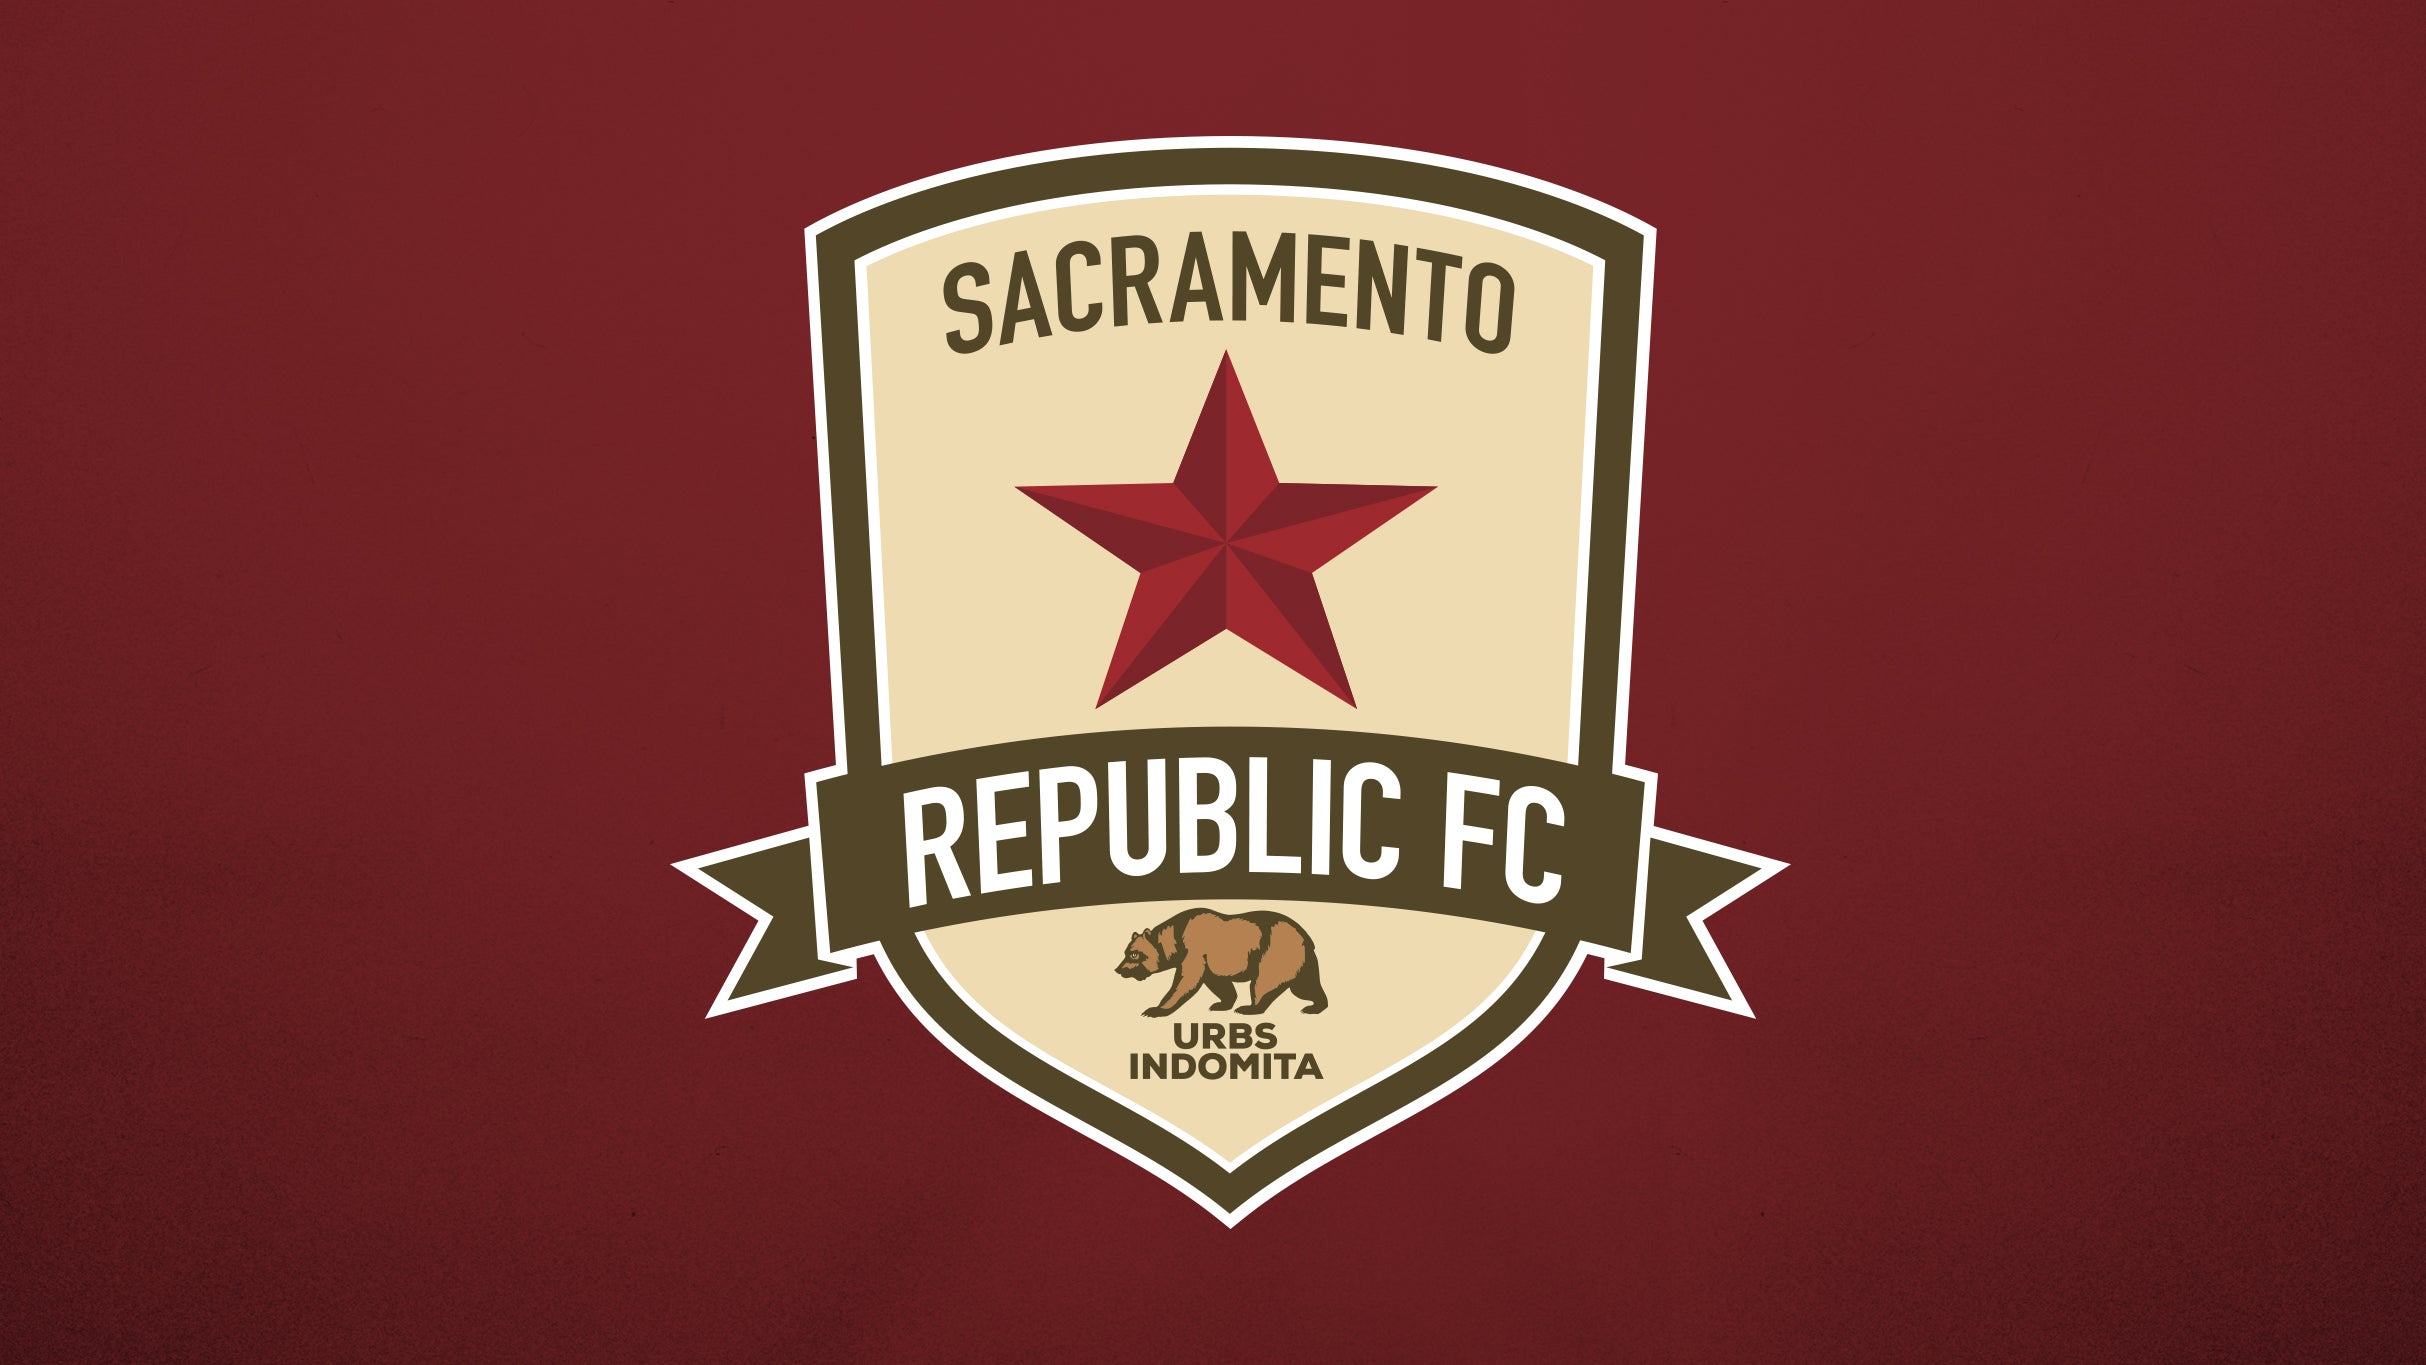 Sacramento Republic FC vs. Oakland Roots SC